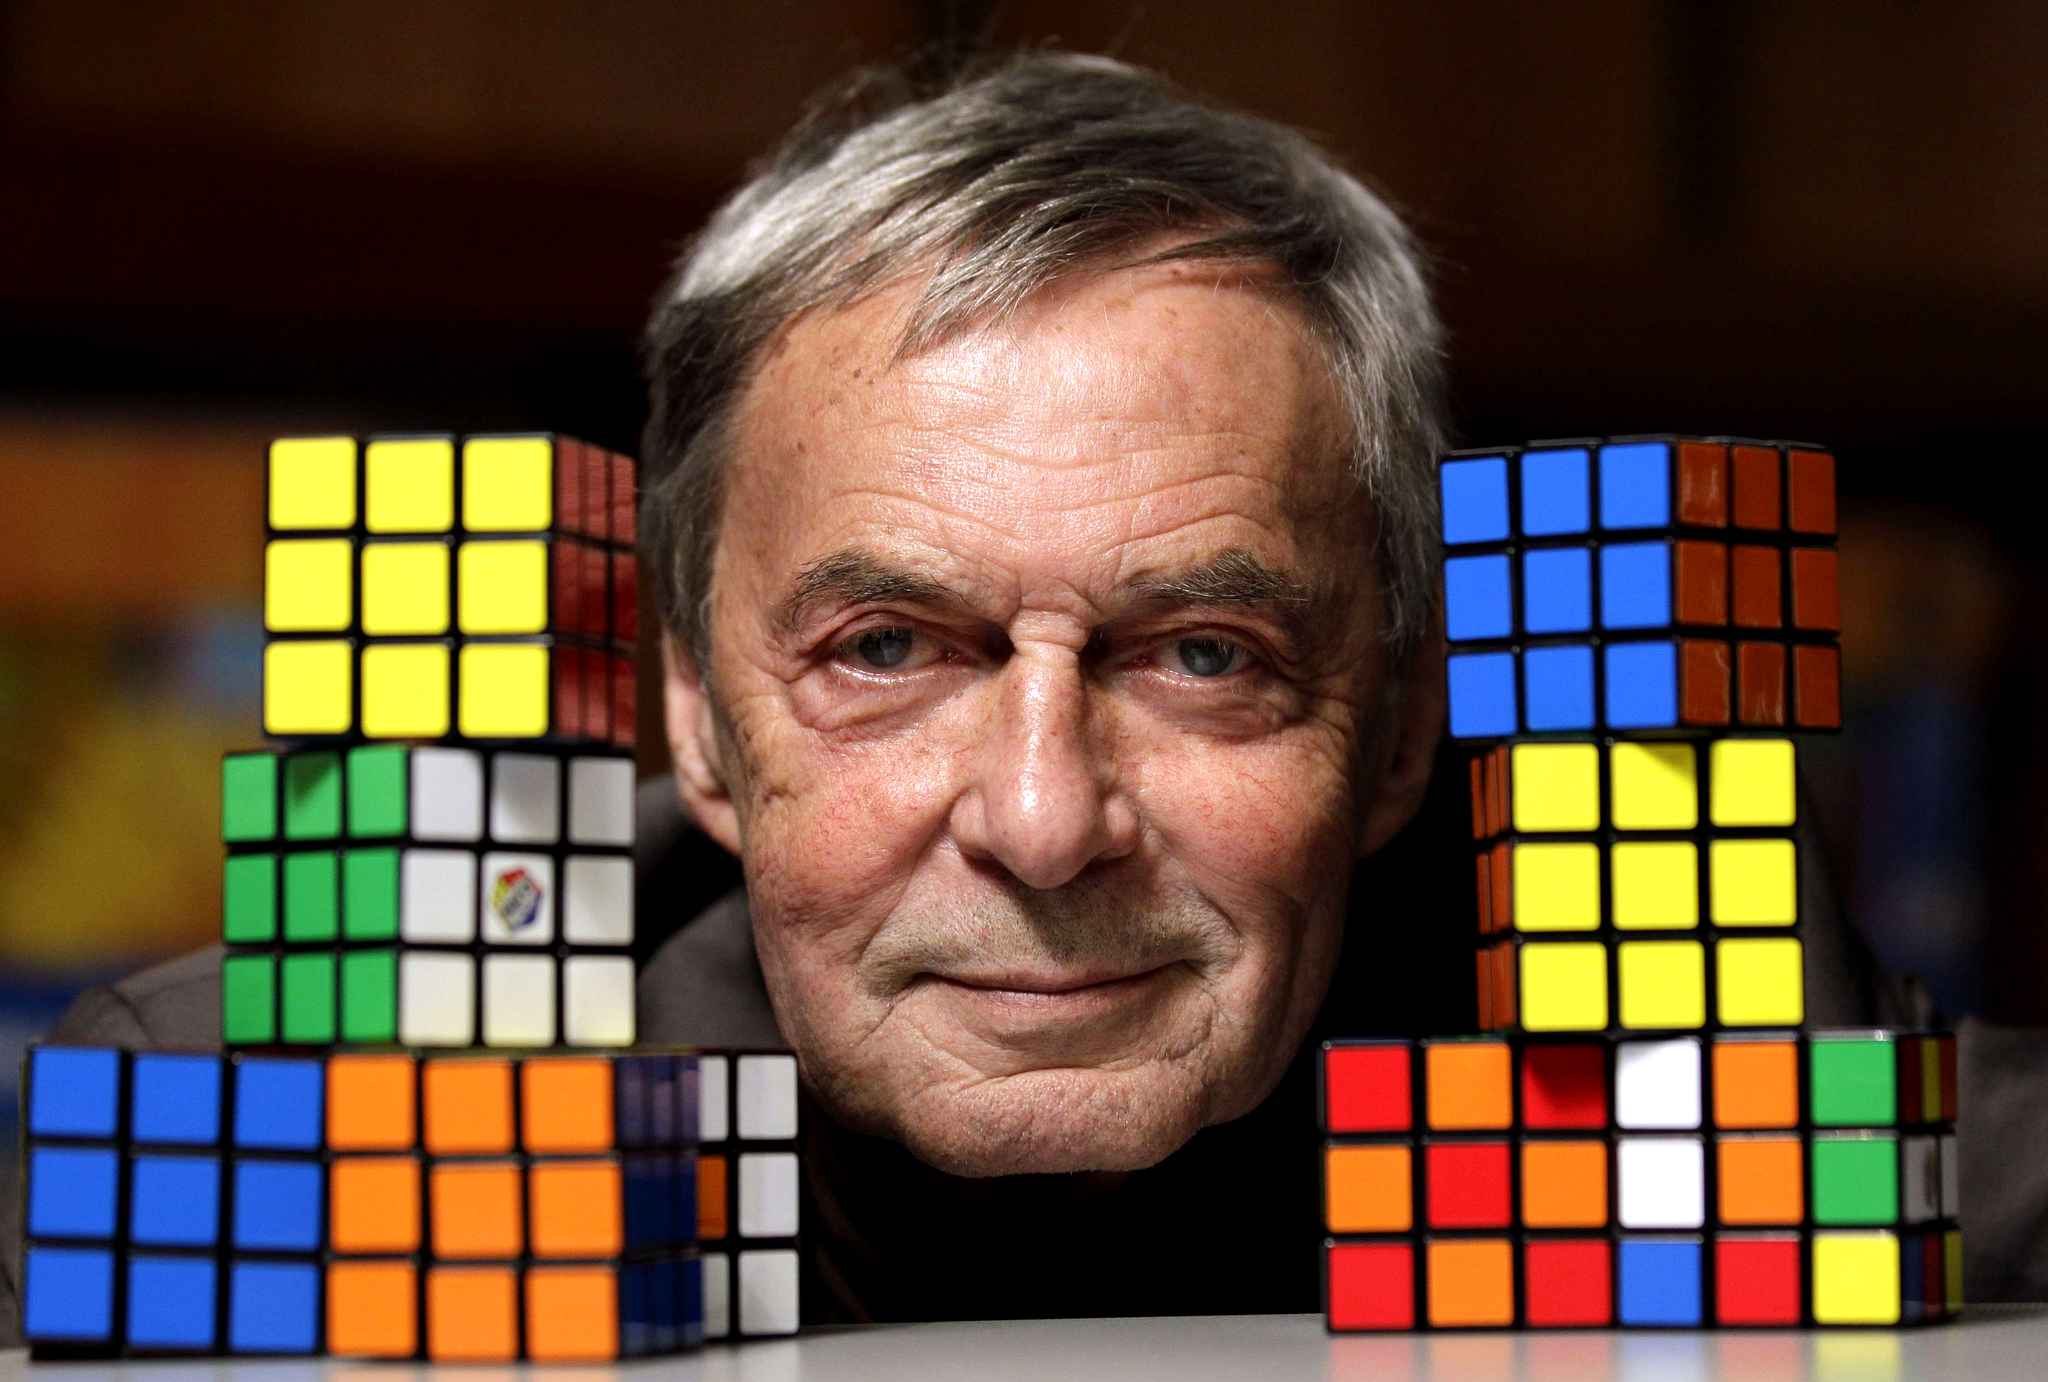 “Creo que lo más característico del Cubo es la contradicción ente la simplicidad y la complejidad”, dijo Rubik